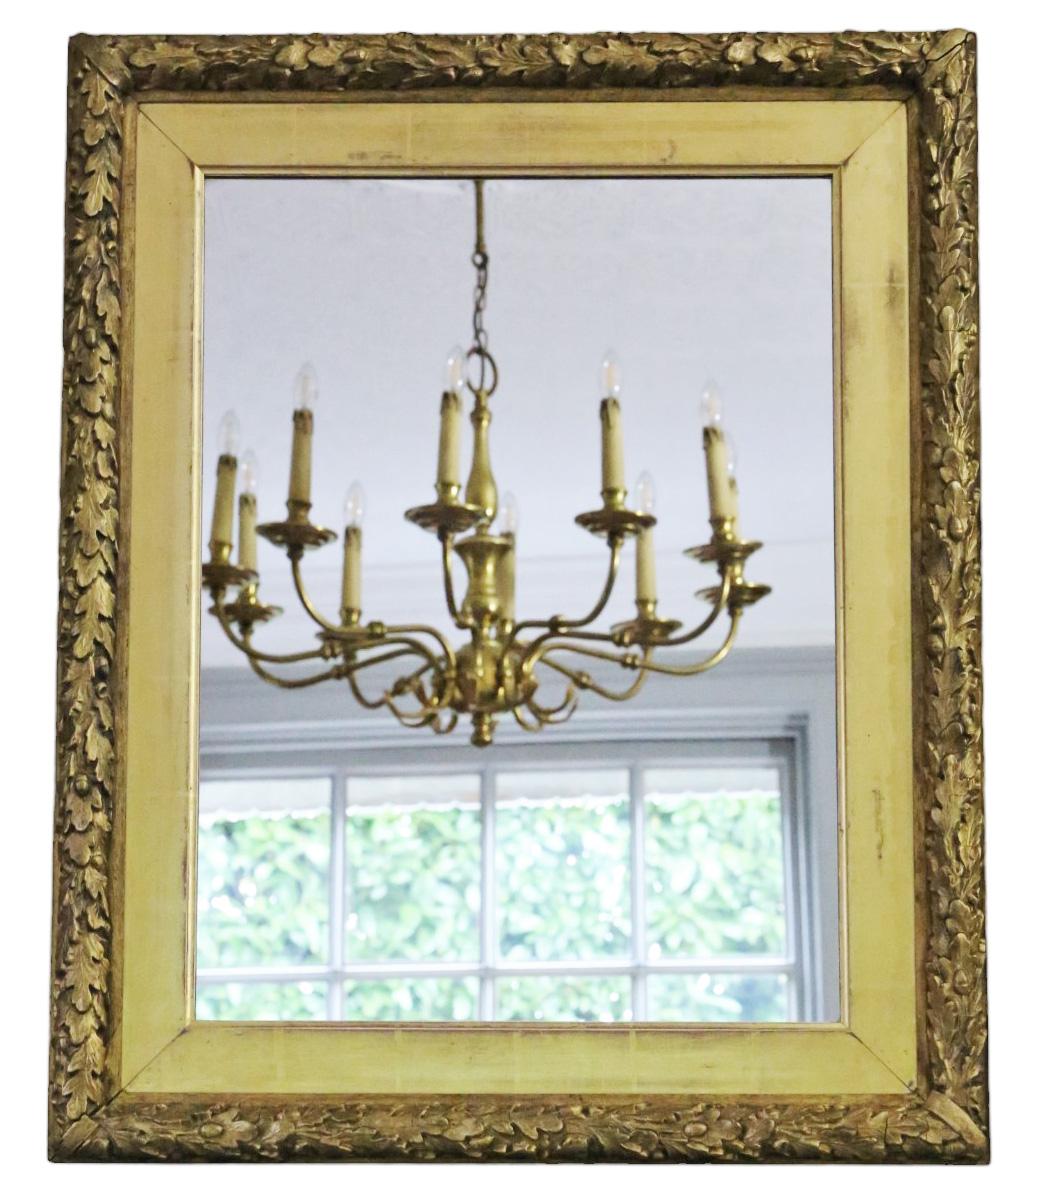 Antiker großer vergoldeter Wandspiegel aus dem 19. Jahrhundert, verziert mit einem dekorativen Eichenblattmuster.

Dieser Spiegel besticht durch sein schlichtes, aber markantes Design und verleiht jedem geeigneten Raum Charakter. Der Rahmen ist